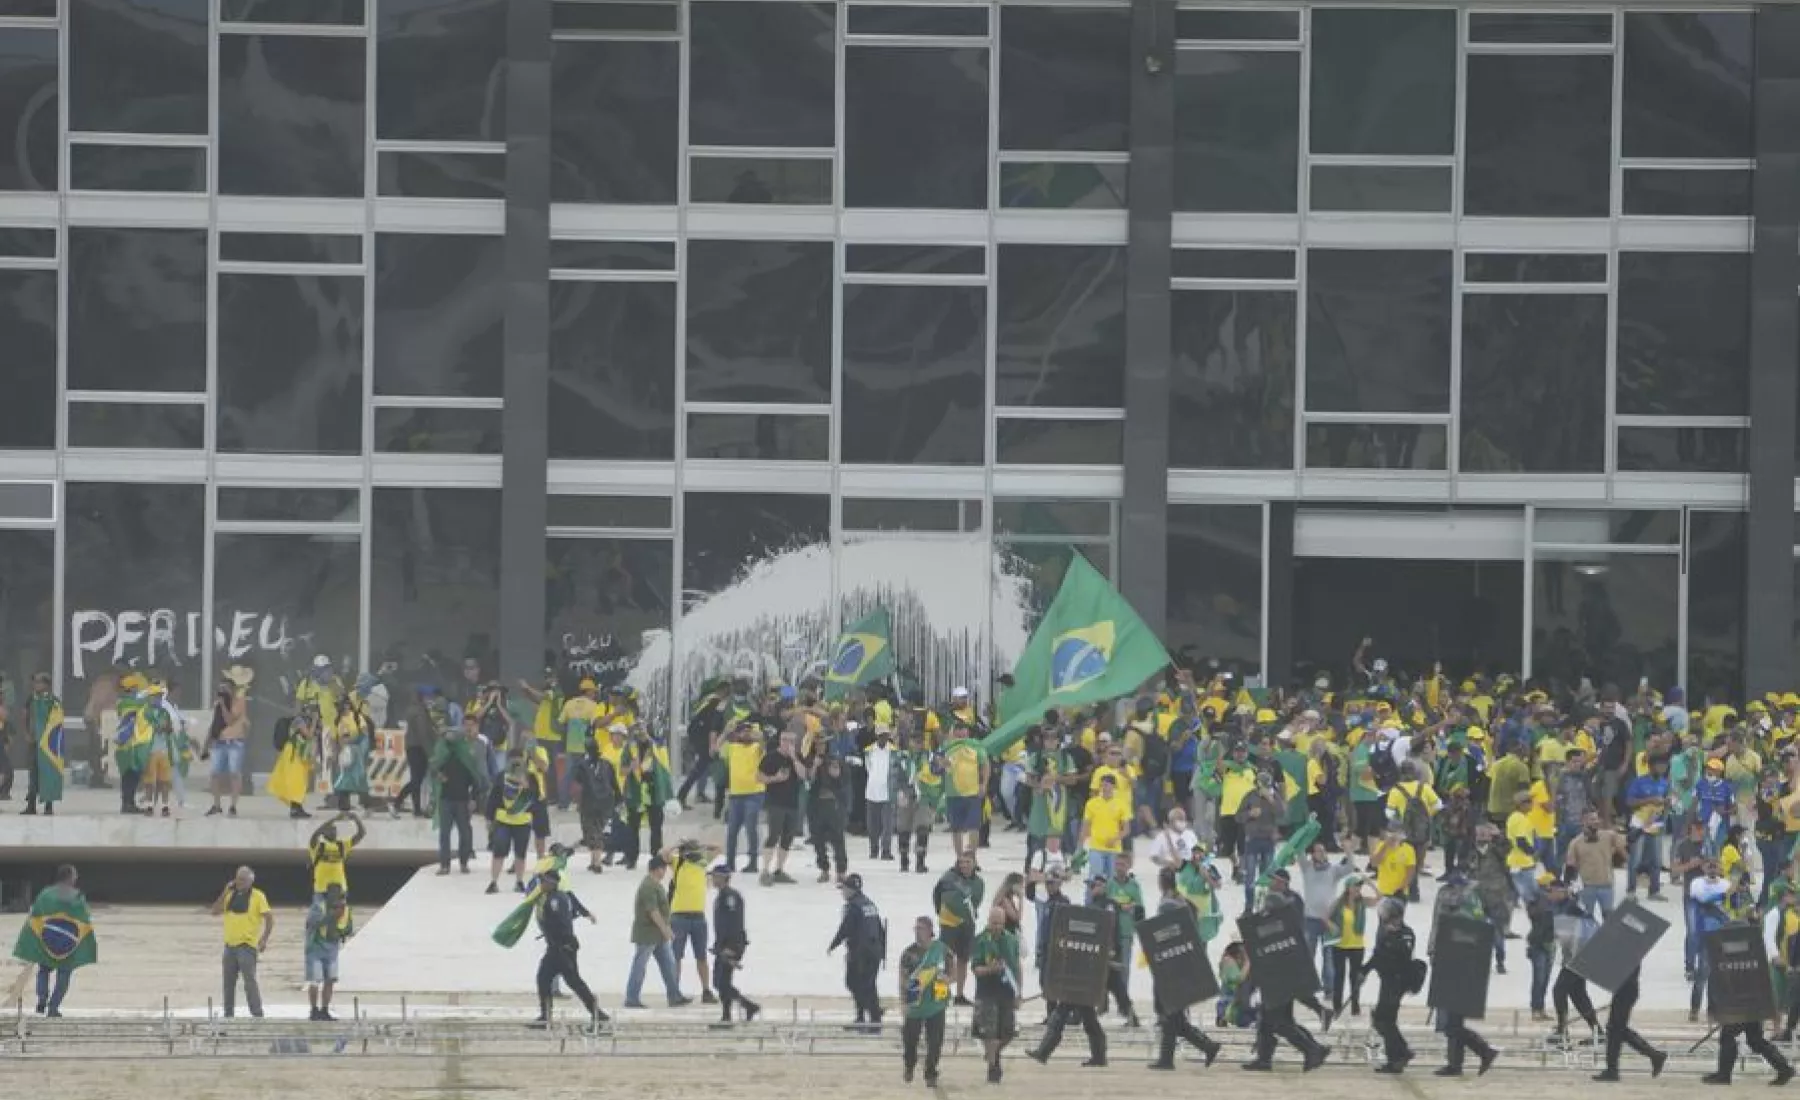 Anhänger des ehemaligen brasilianischen Präsidenten Bolsonaro stürmen den Palacio do Planalto, den offiziellen Sitz des brasilianischen Präsidenten.